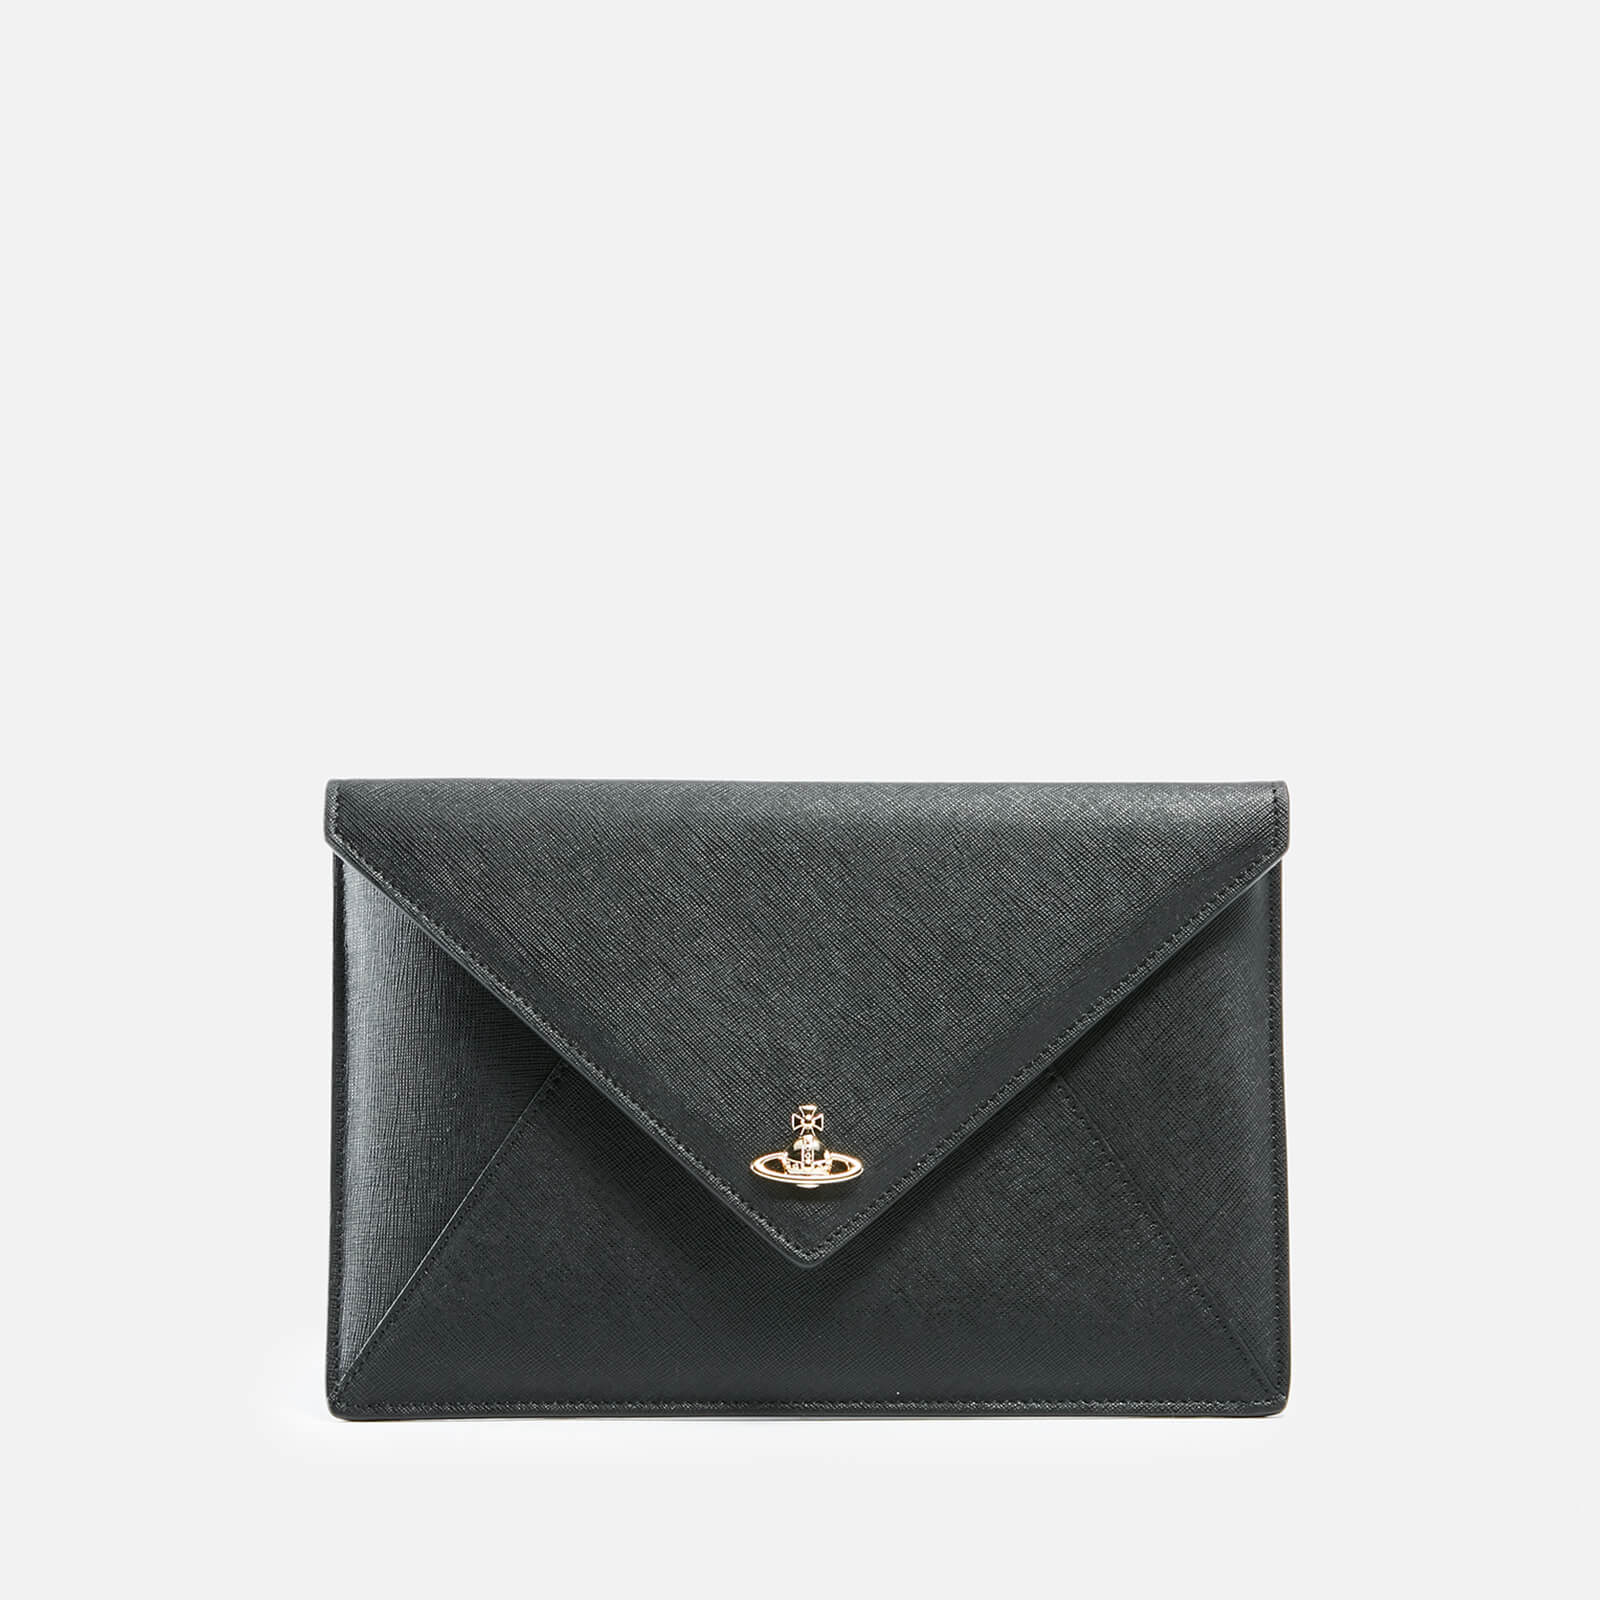 Vivienne Westwood Women's Saffiano Envelope Clutch Bag - Black